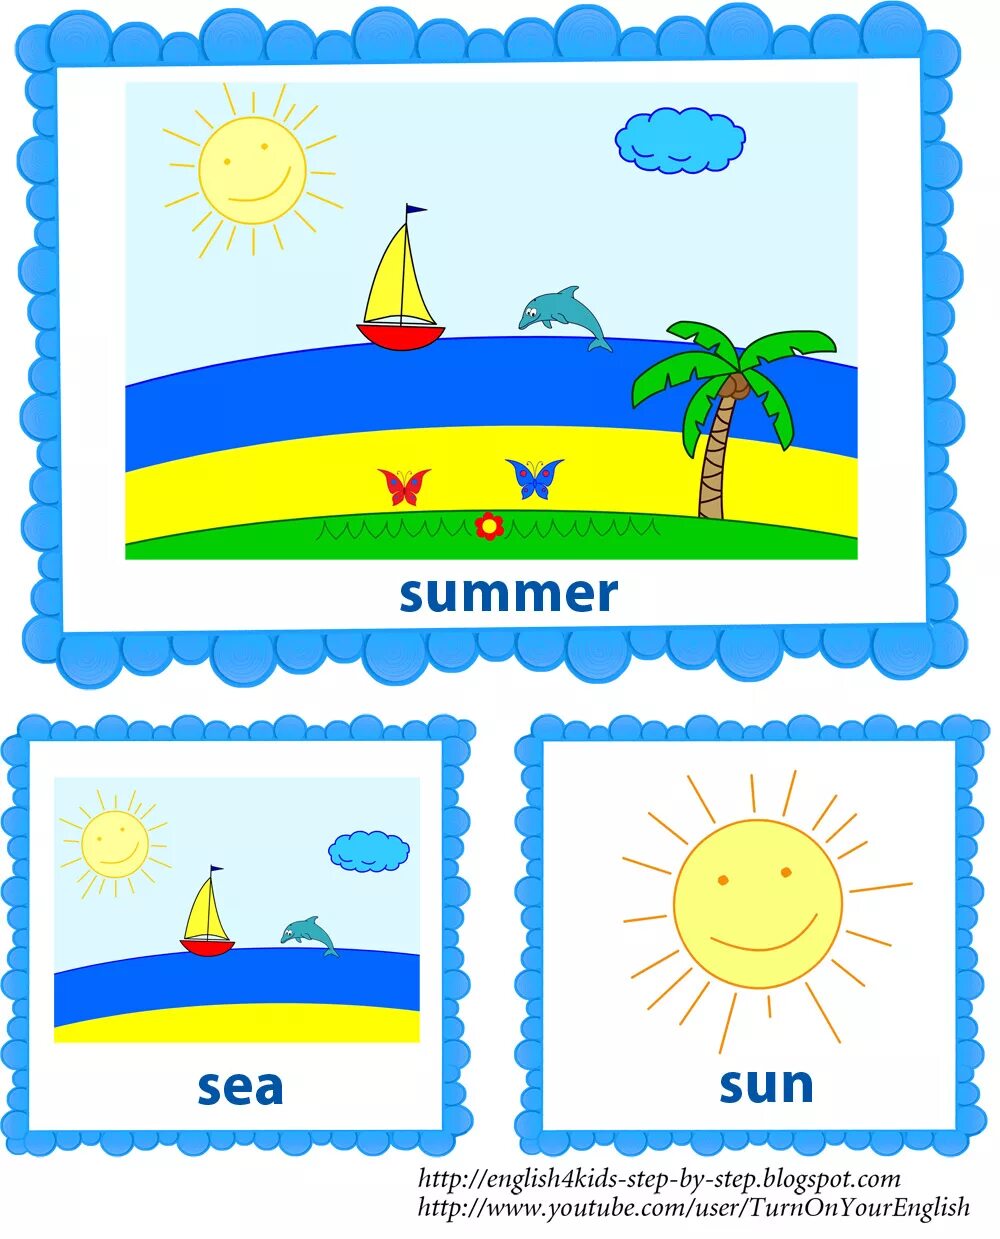 Тема лето на английском языке для детей. Дети лето английский. Лето карточки для детей. Карточки английский язык для детей по теме лето.